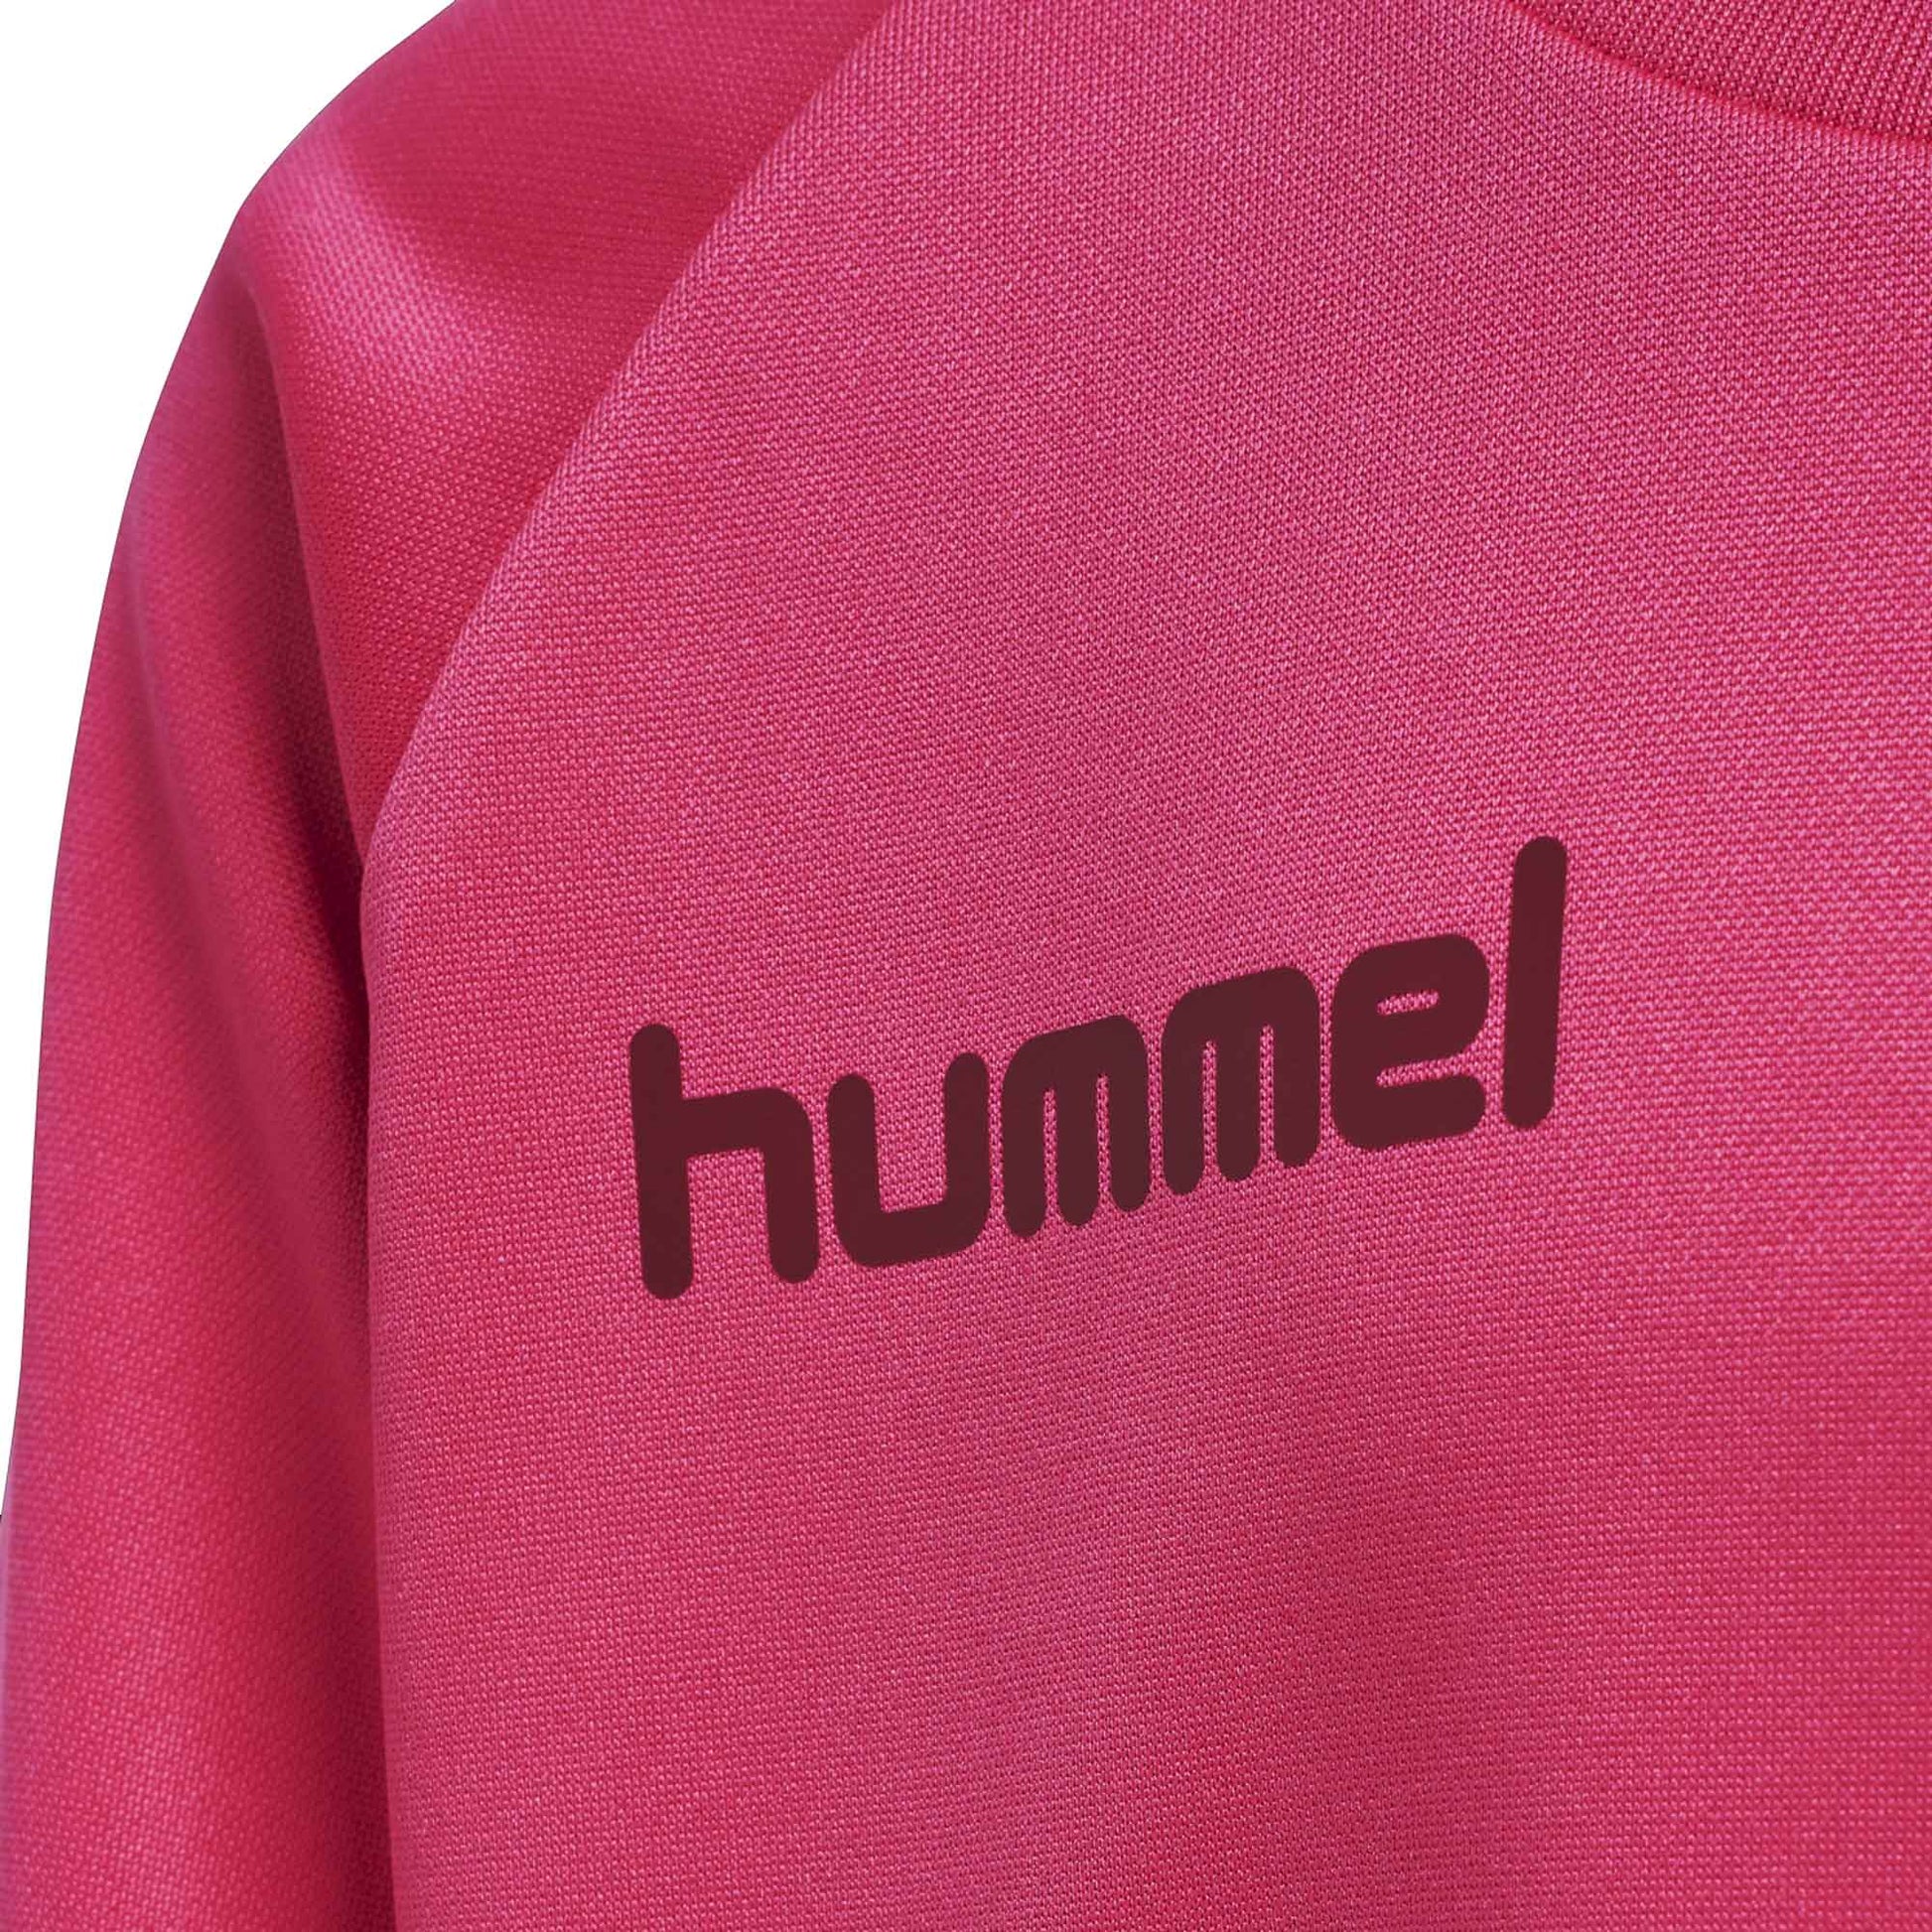 Hummel Boy's Activewear Raglan Sleeve Tee Shirt Boy's Tee Shirt HAS Apparel 